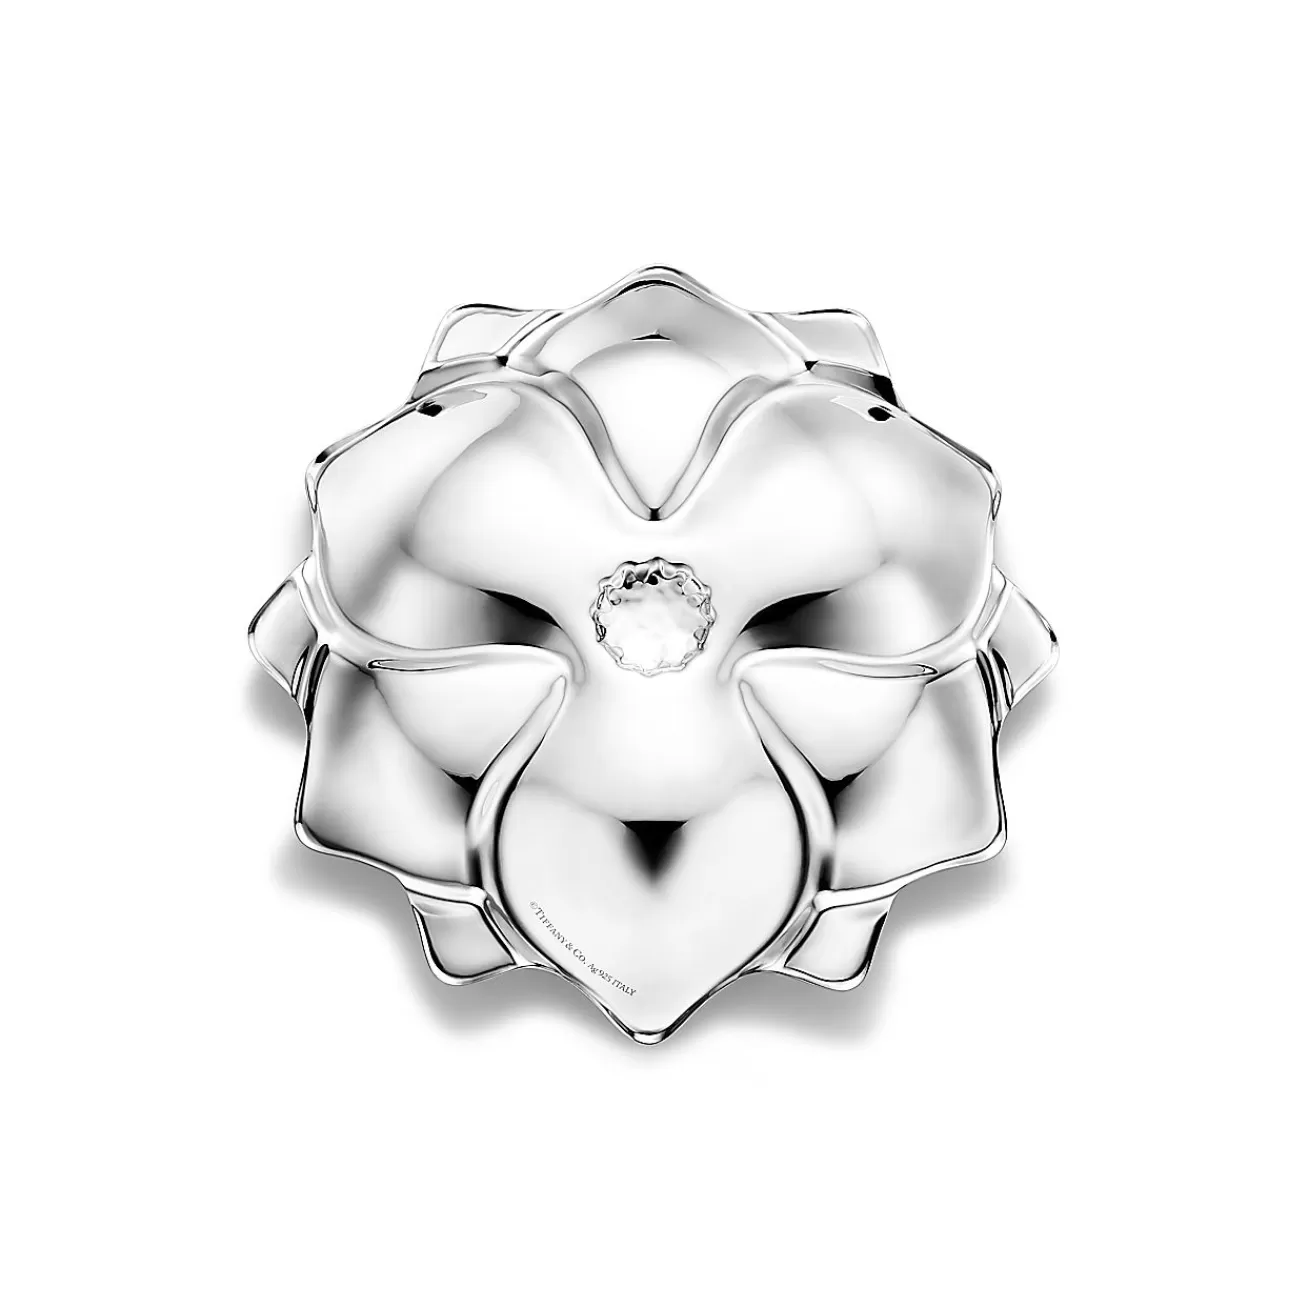 Tiffany & Co. Tiffany Home Essentials Magnolia Vide Poche in Sterling Silver | ^ Decor